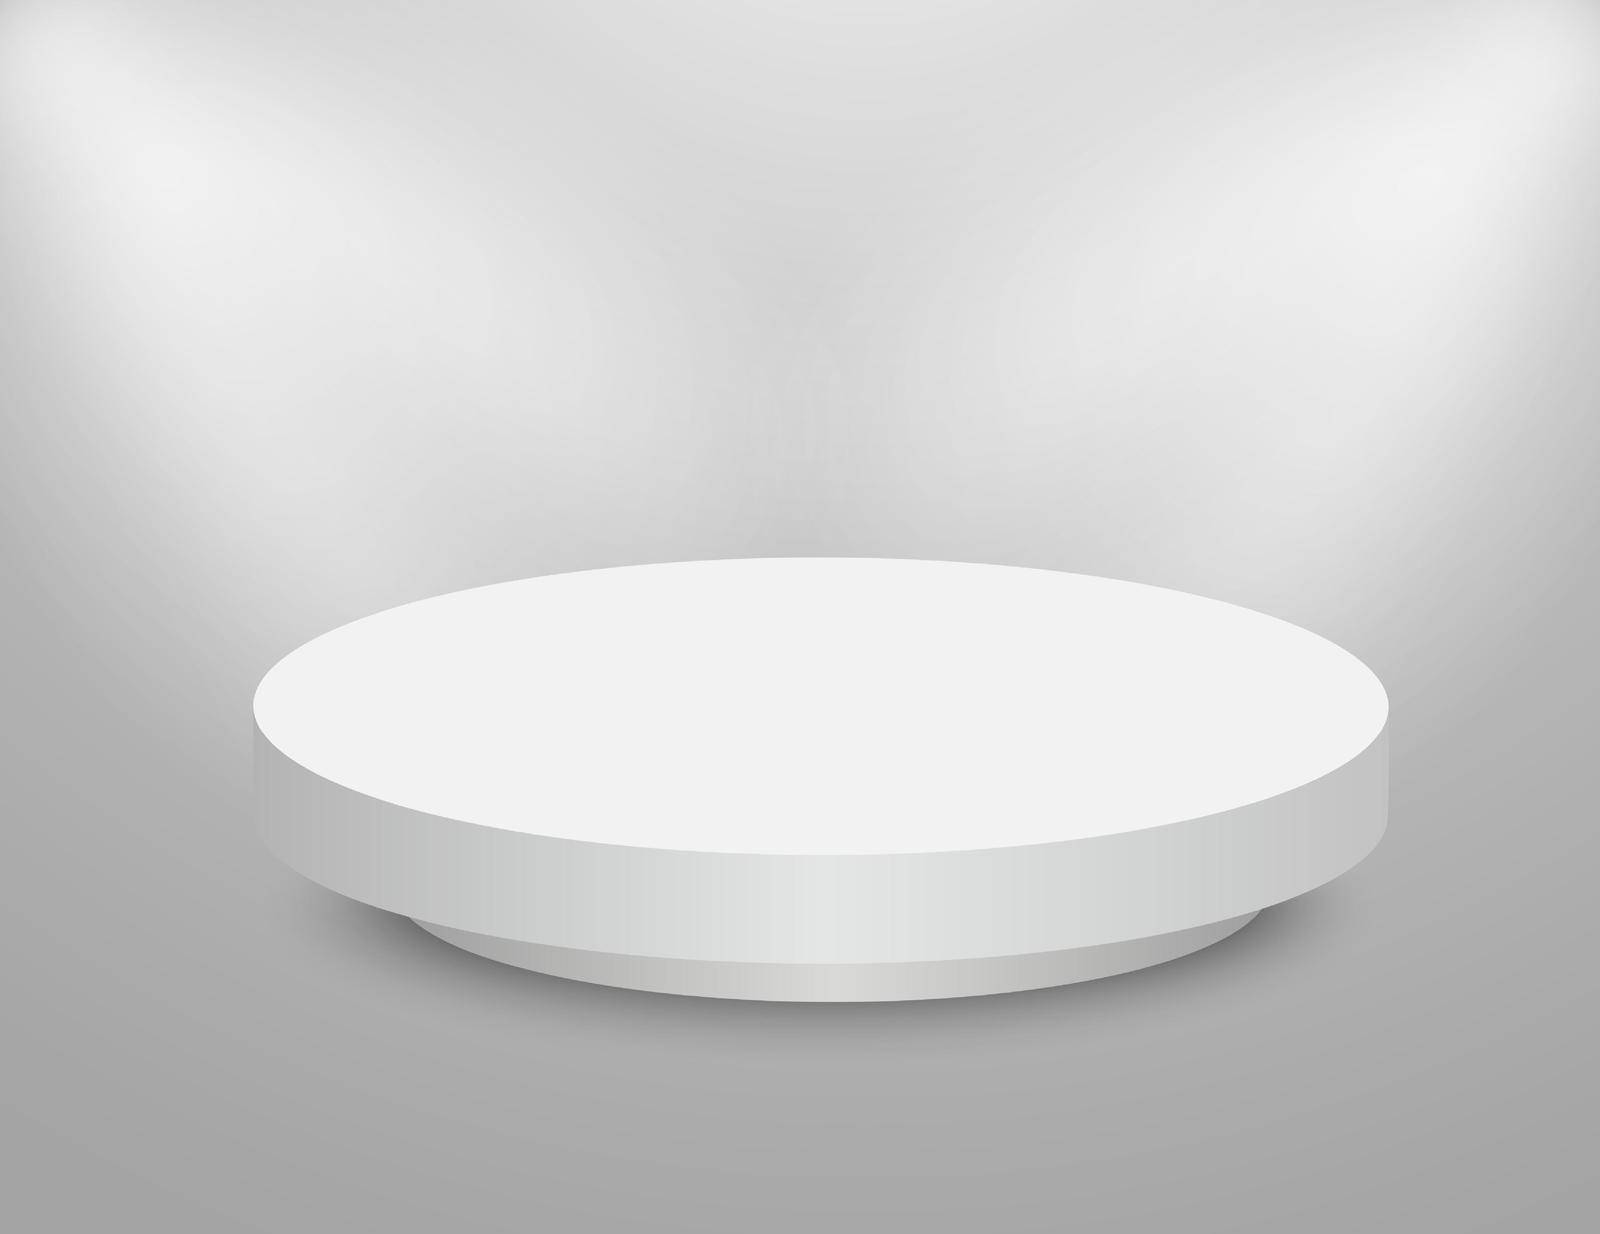 Podium 3D round stage. Circle white pedestal. Empty vector showroom platform.